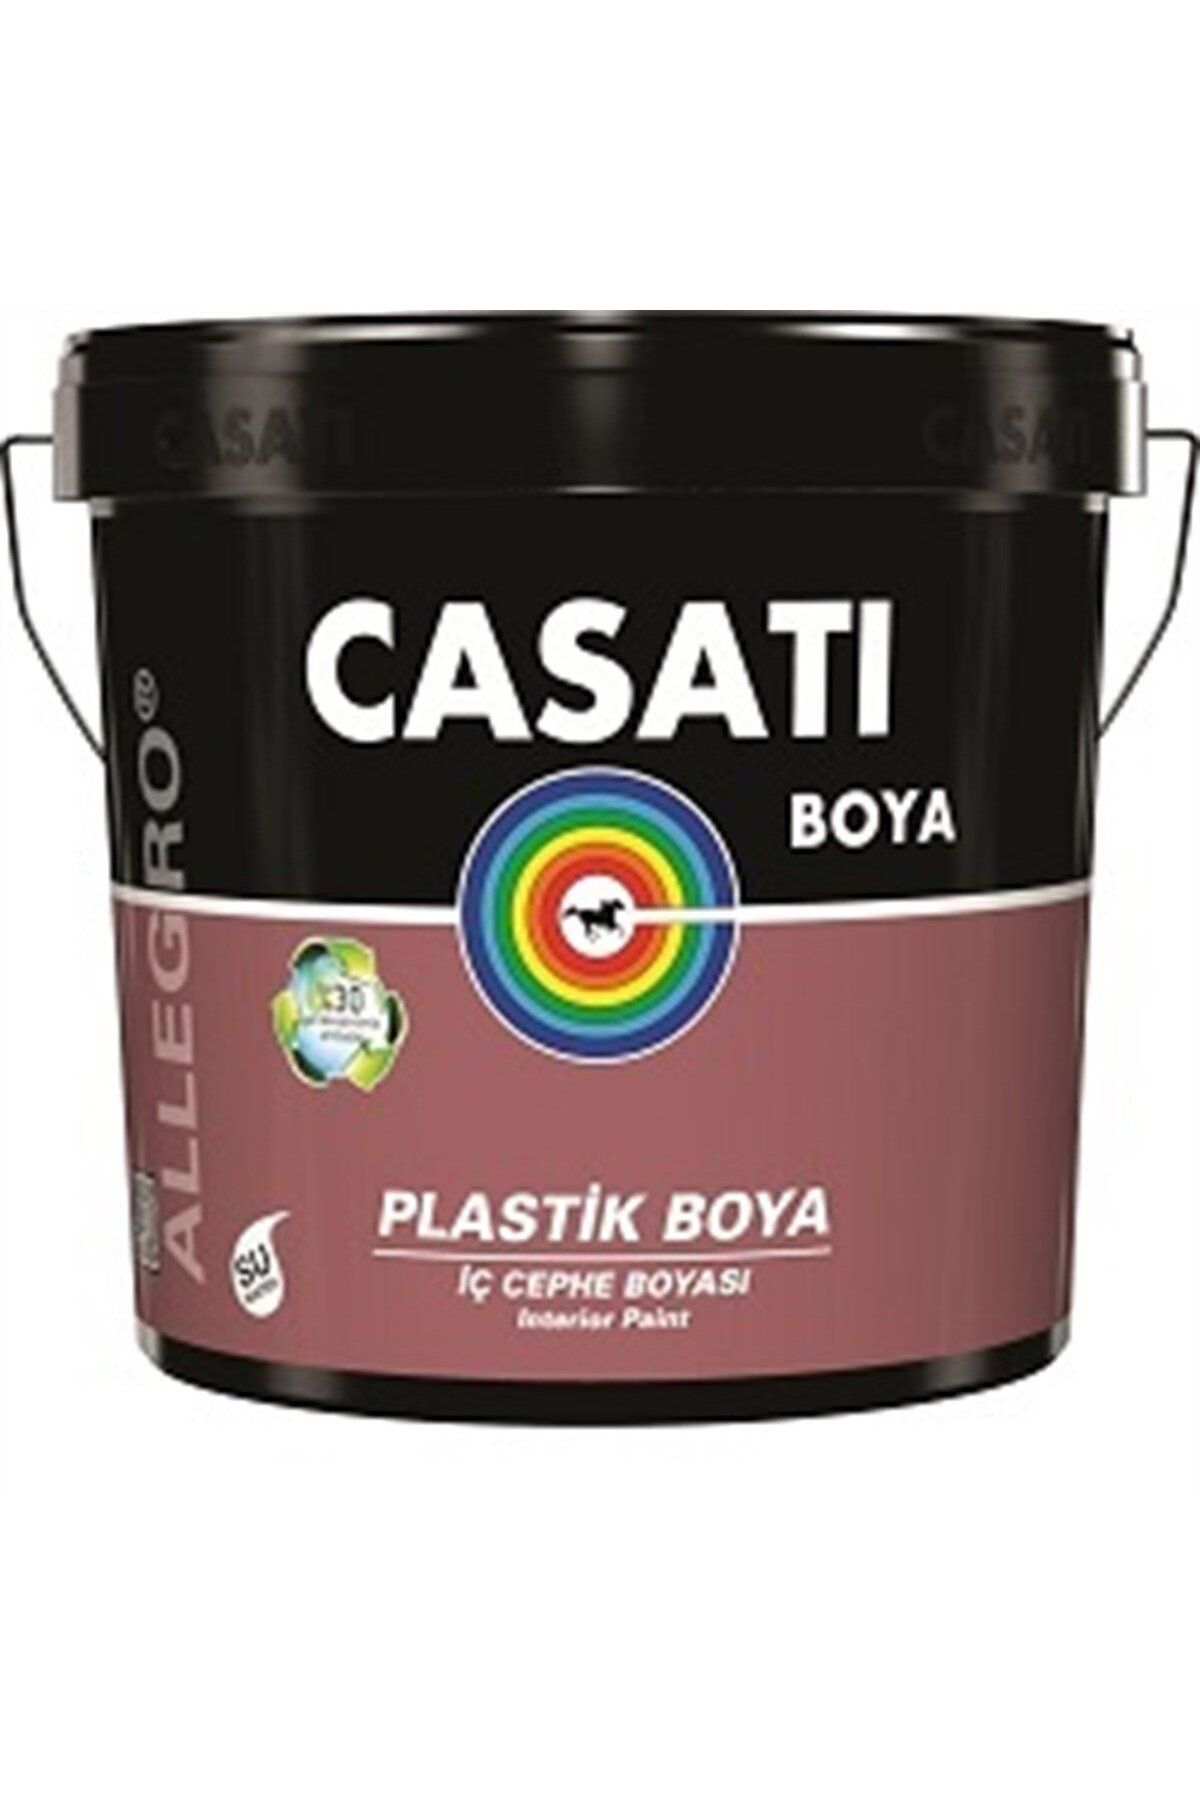 Casati Allegro Plastik Iç Cephe Boyası C822 Özel Kum Beji 10 Kg